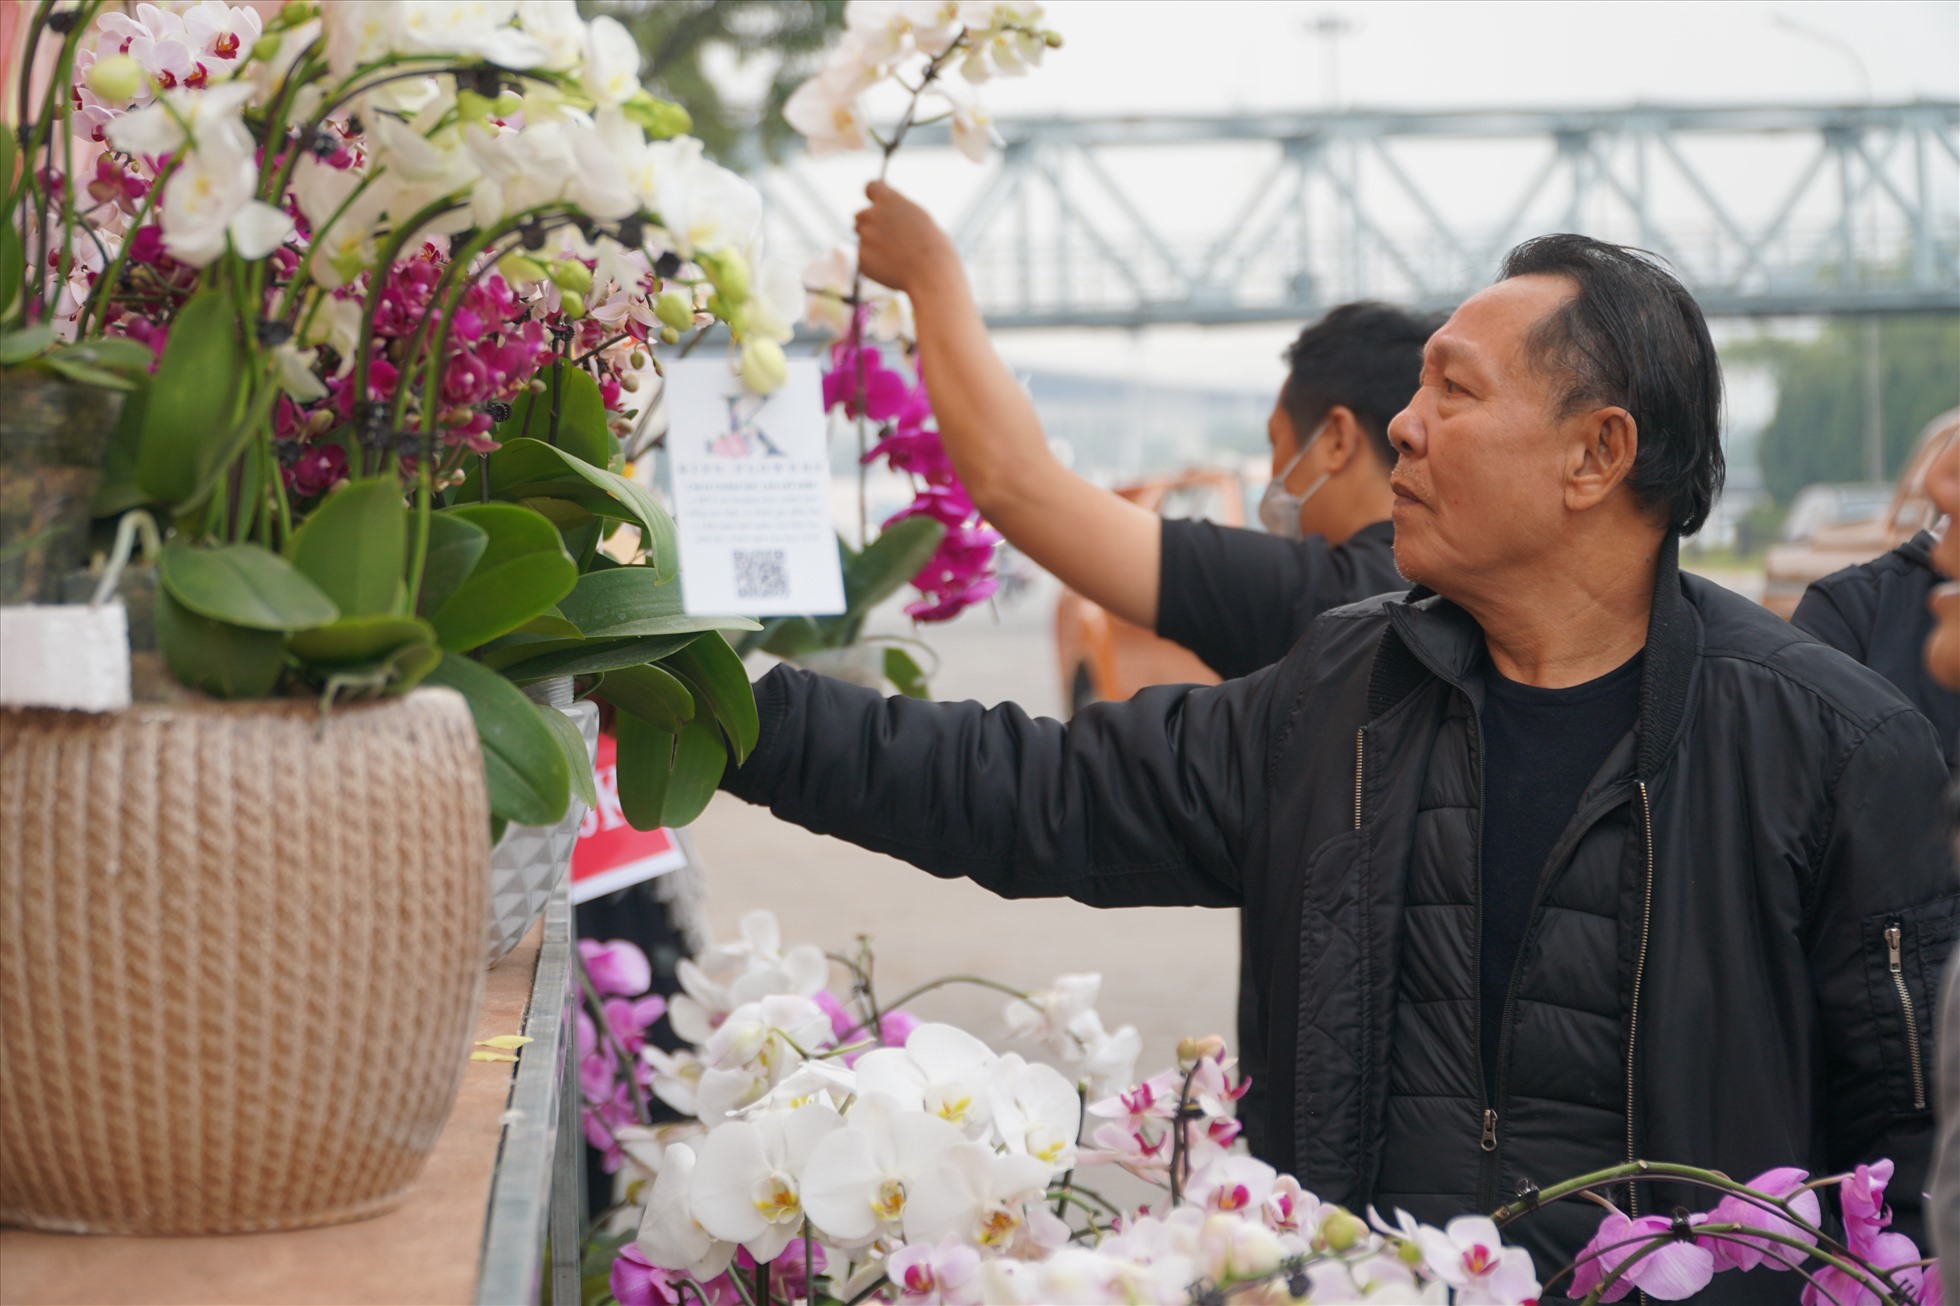 Ông Ngọc Quang chia sẻ: “Năm nào tôi cũng mua lan vào thời điểm 29-30 Tết vì giá rẻ.